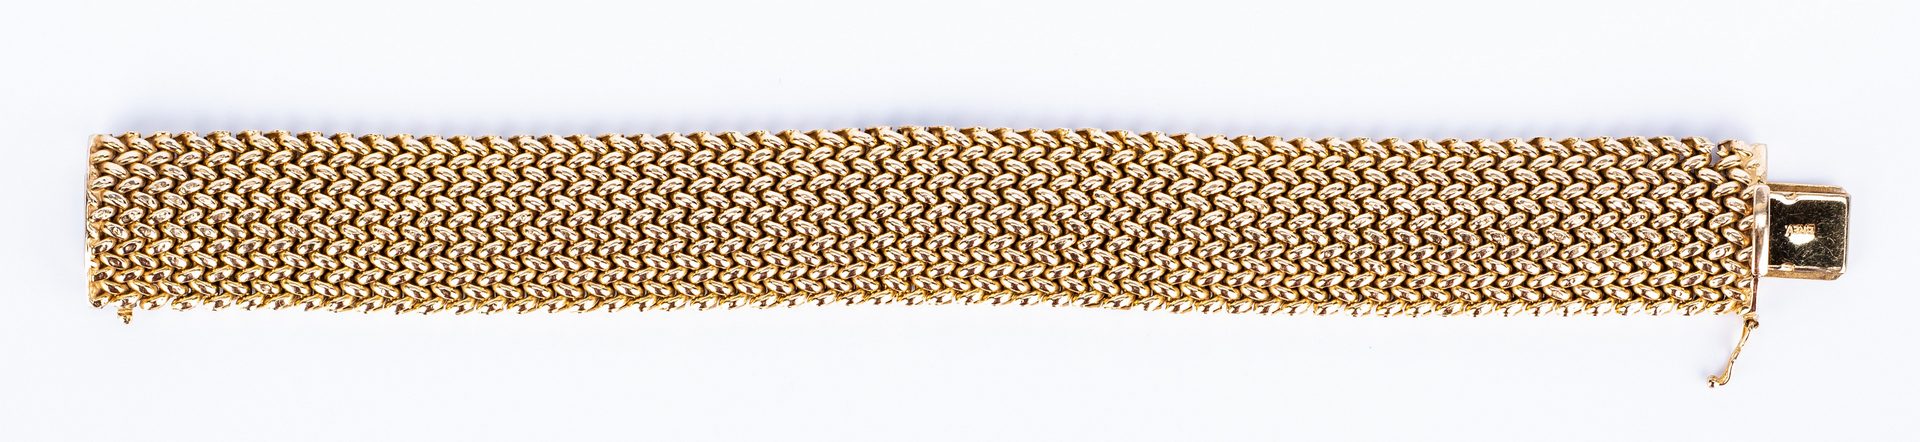 Lot 442: Italian 14K Wide Woven Bracelet, 38.5 grams